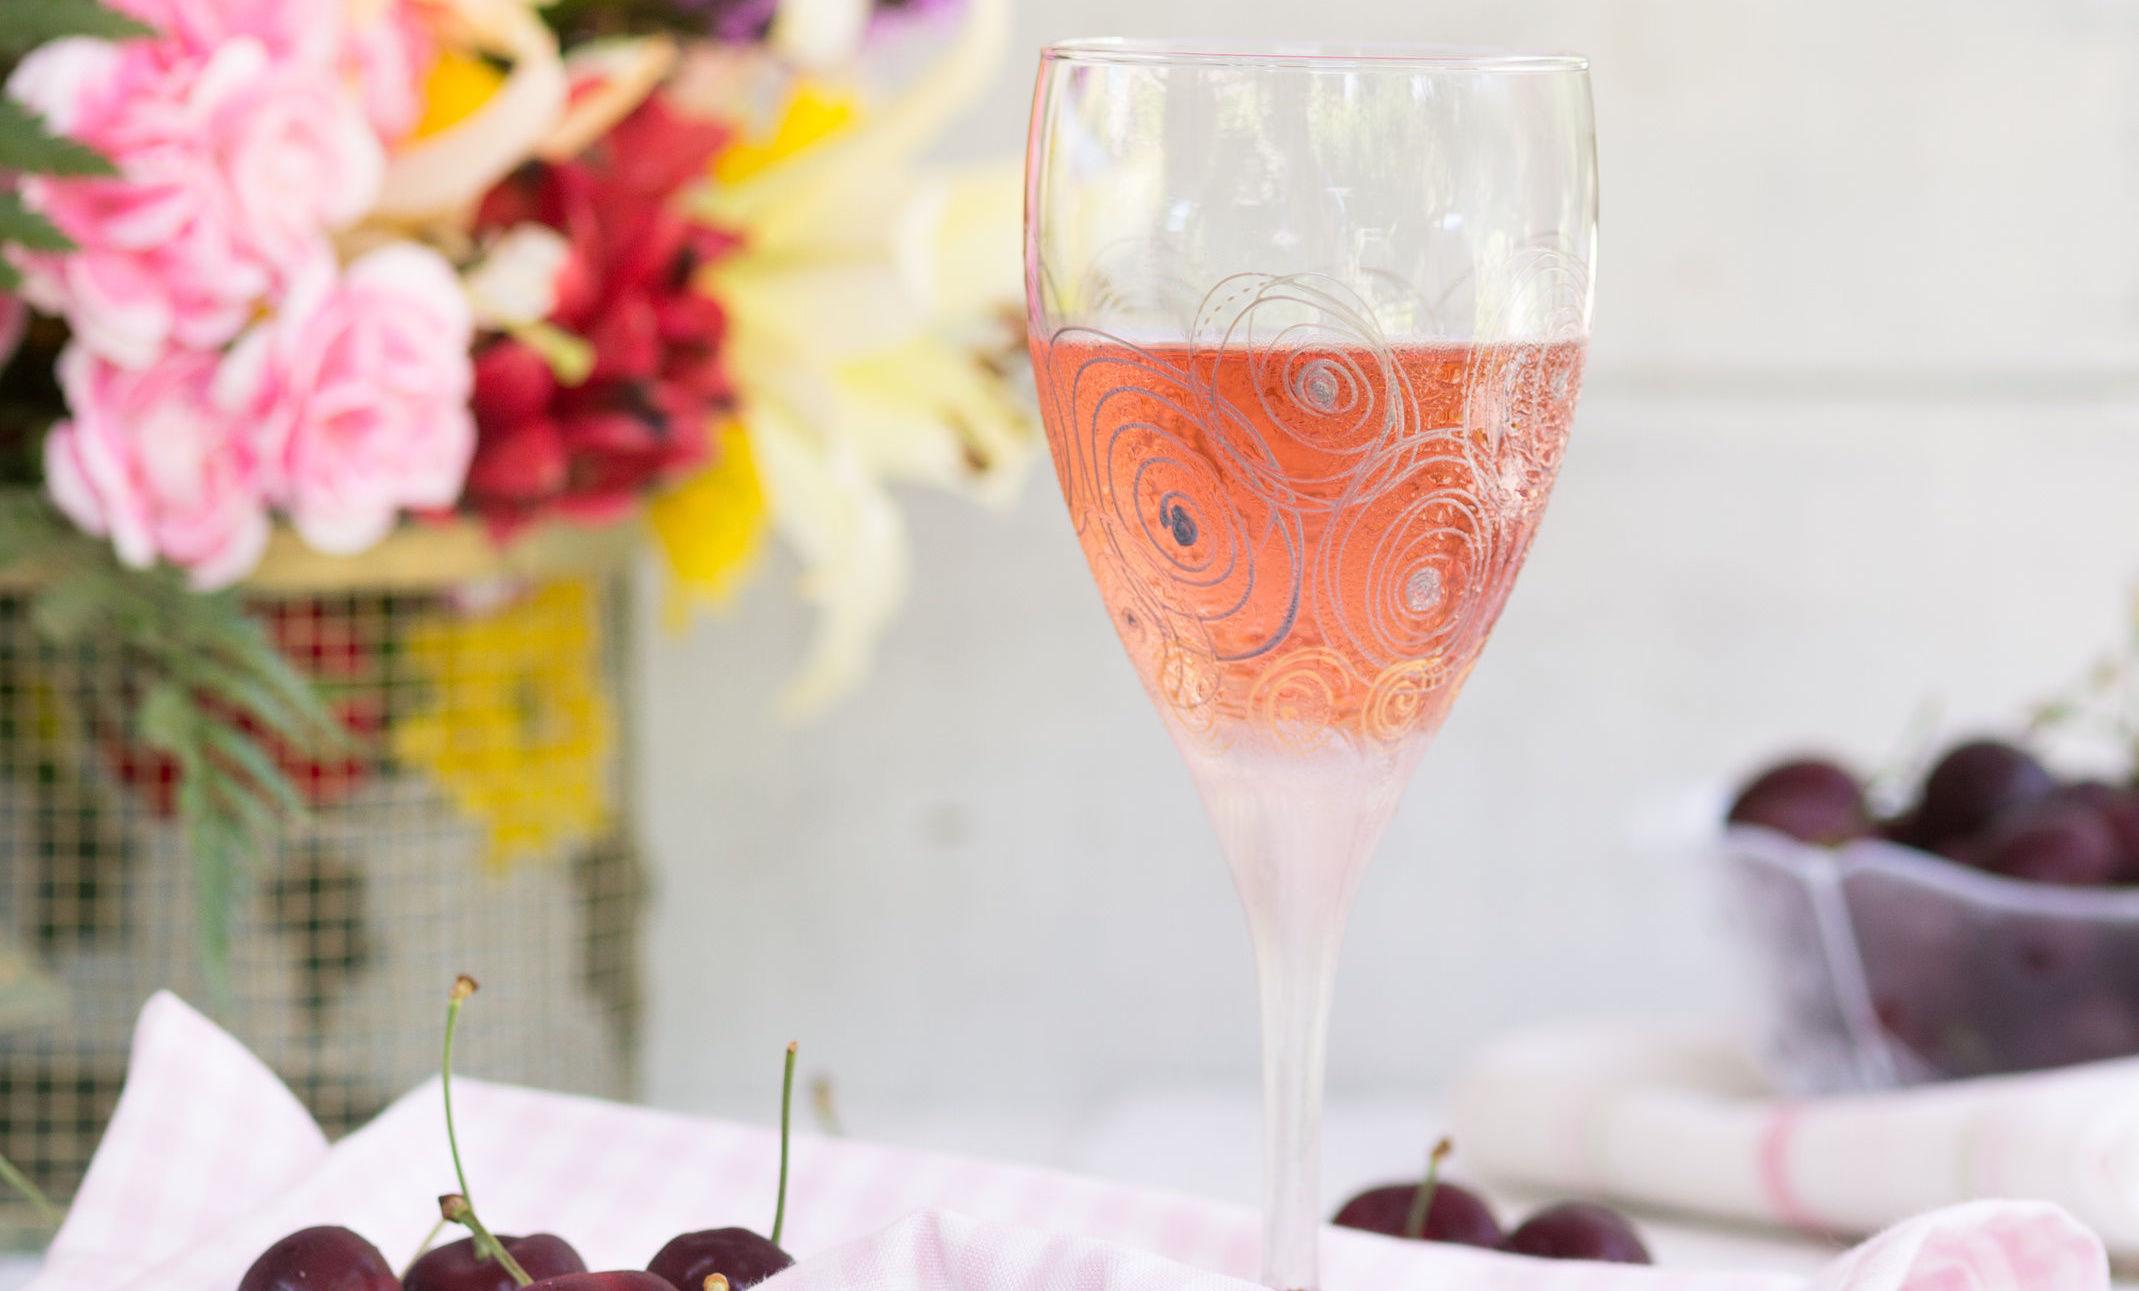 SOMMERFØLELSEN: Et friskt glass rosévin er perfekt til lyse sommerkvelder. Foto: NTB Scanpix.